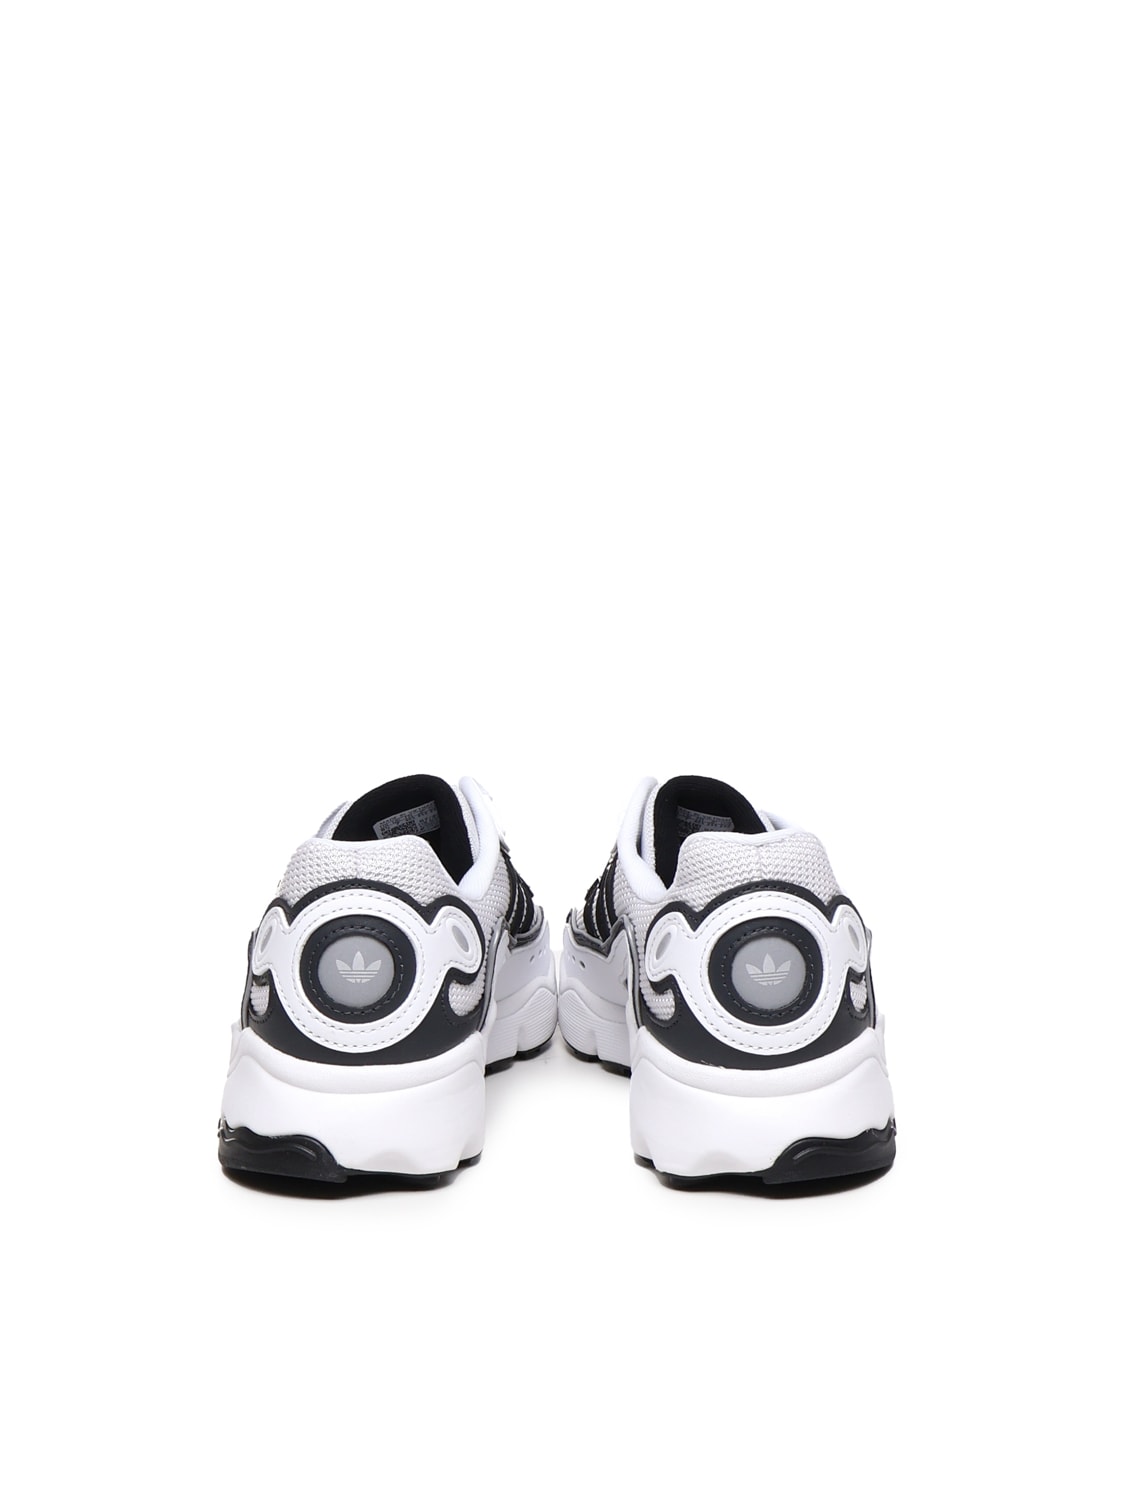 Shop Adidas Originals Ozweego Og Shoes In White, Black